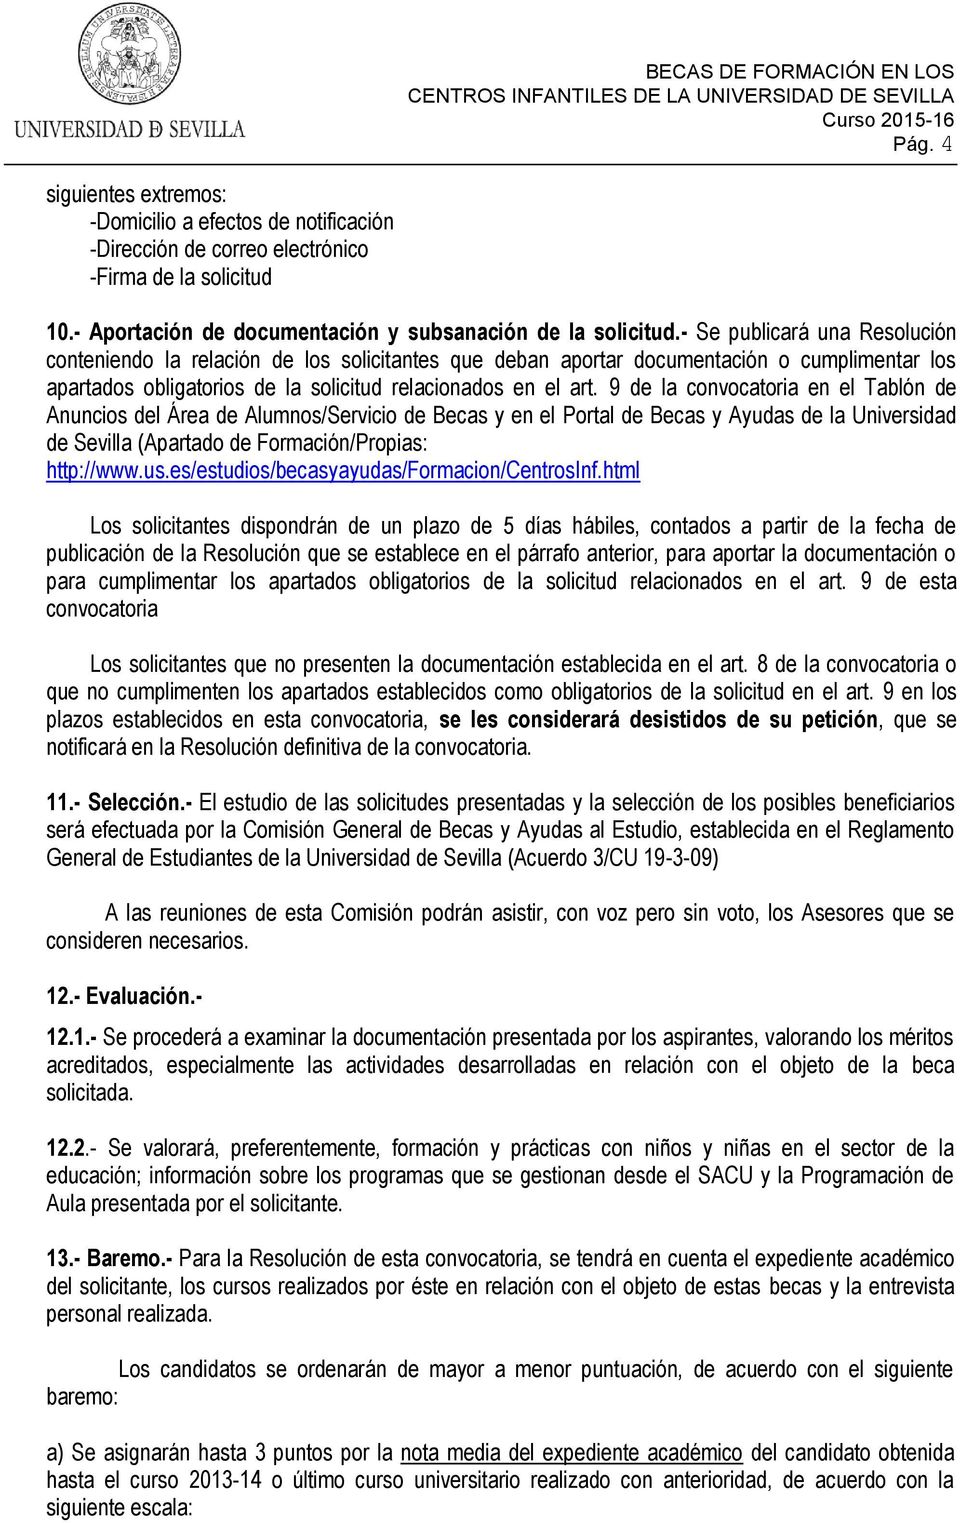 9 de la convocatoria en el Tablón de Anuncios del Área de Alumnos/Servicio de Becas y en el Portal de Becas y Ayudas de la Universidad de Sevilla (Apartado de Formación/Propias: http://www.us.